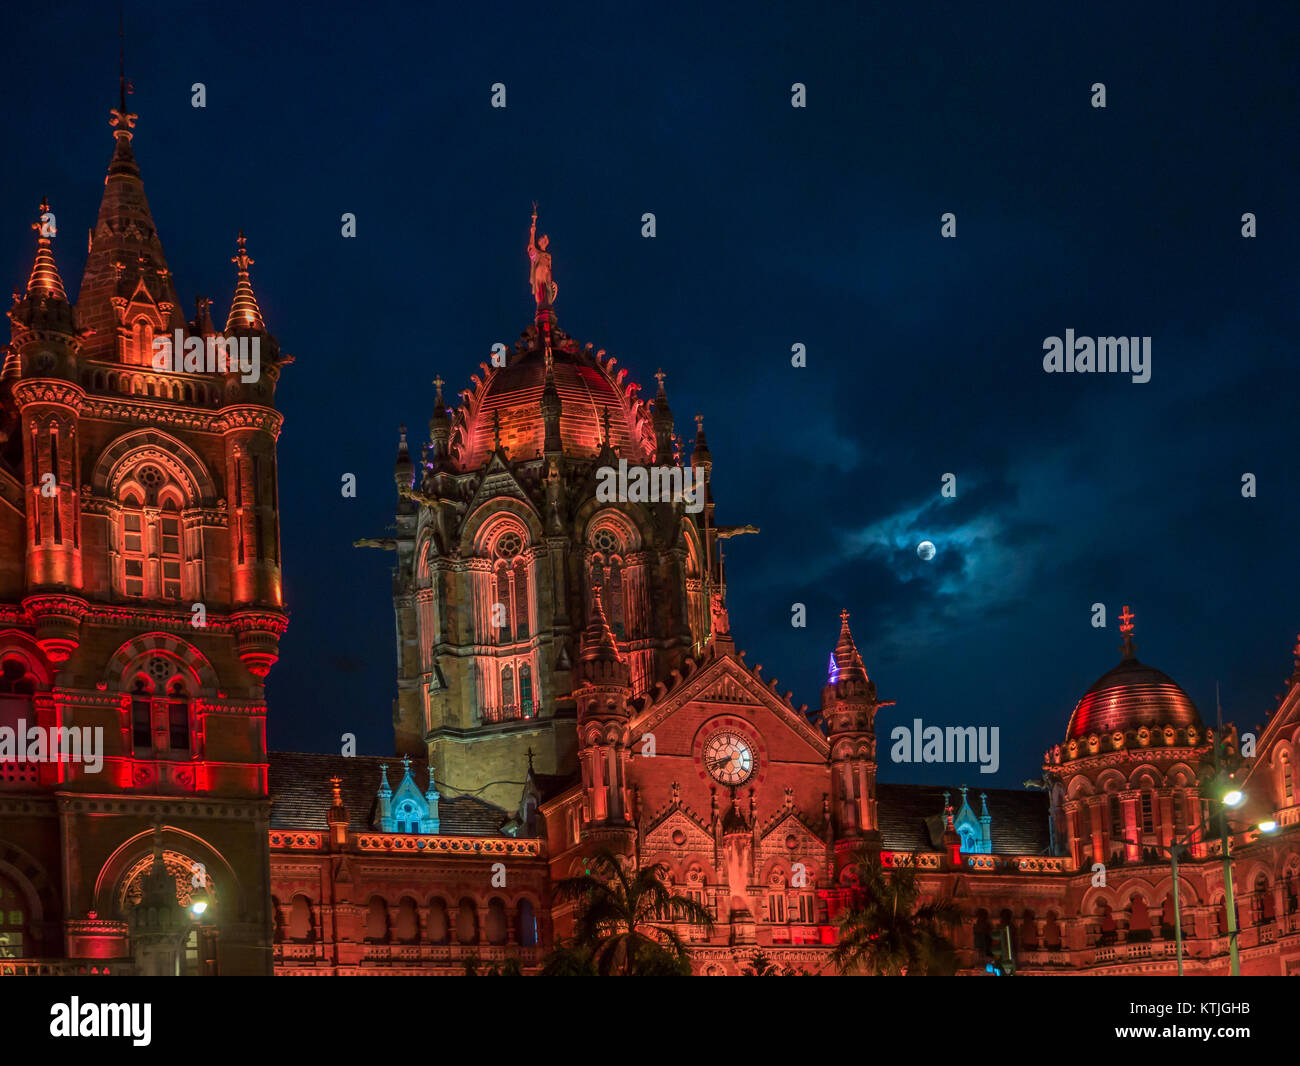 La gare Chhatrapati Shivaji Terminus (MSTC), est une gare ferroviaire historique et site du patrimoine mondial de l'UNESCO à Mumbai, Maharashtra, Inde Banque D'Images